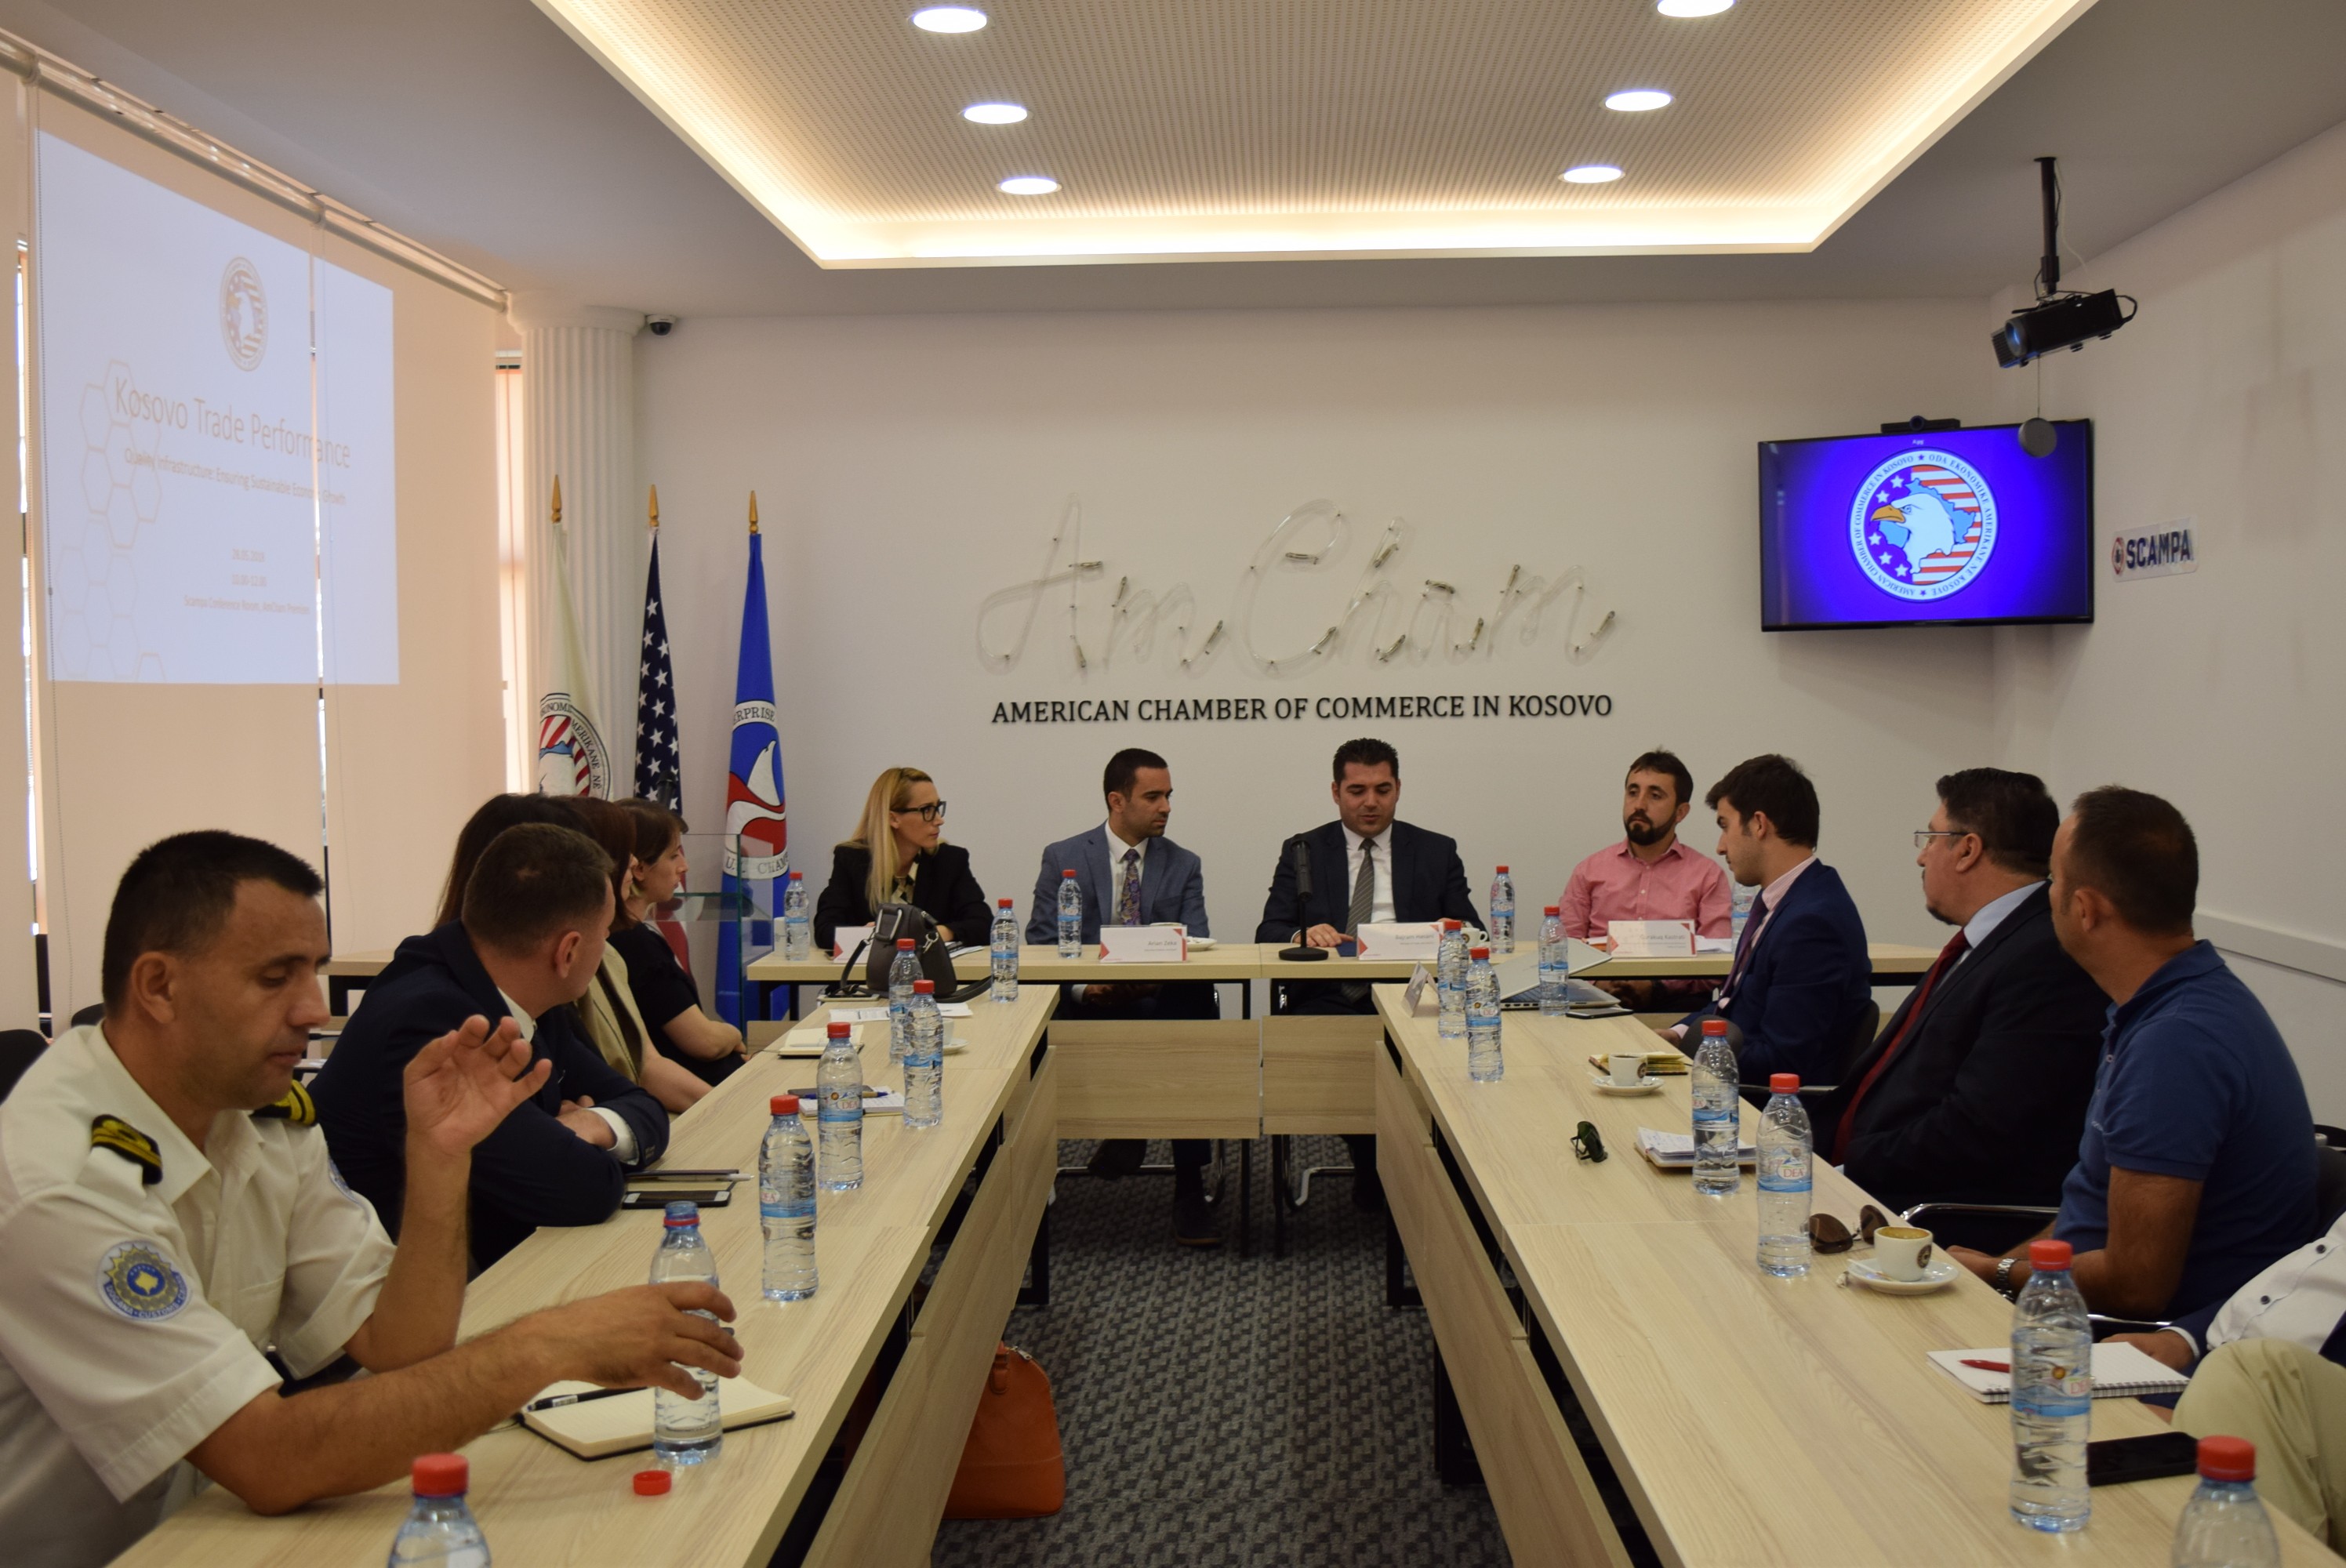 Infrastruktura e cilësisë, faktor kyç në rritjen e eksportit të produkteve kosovare